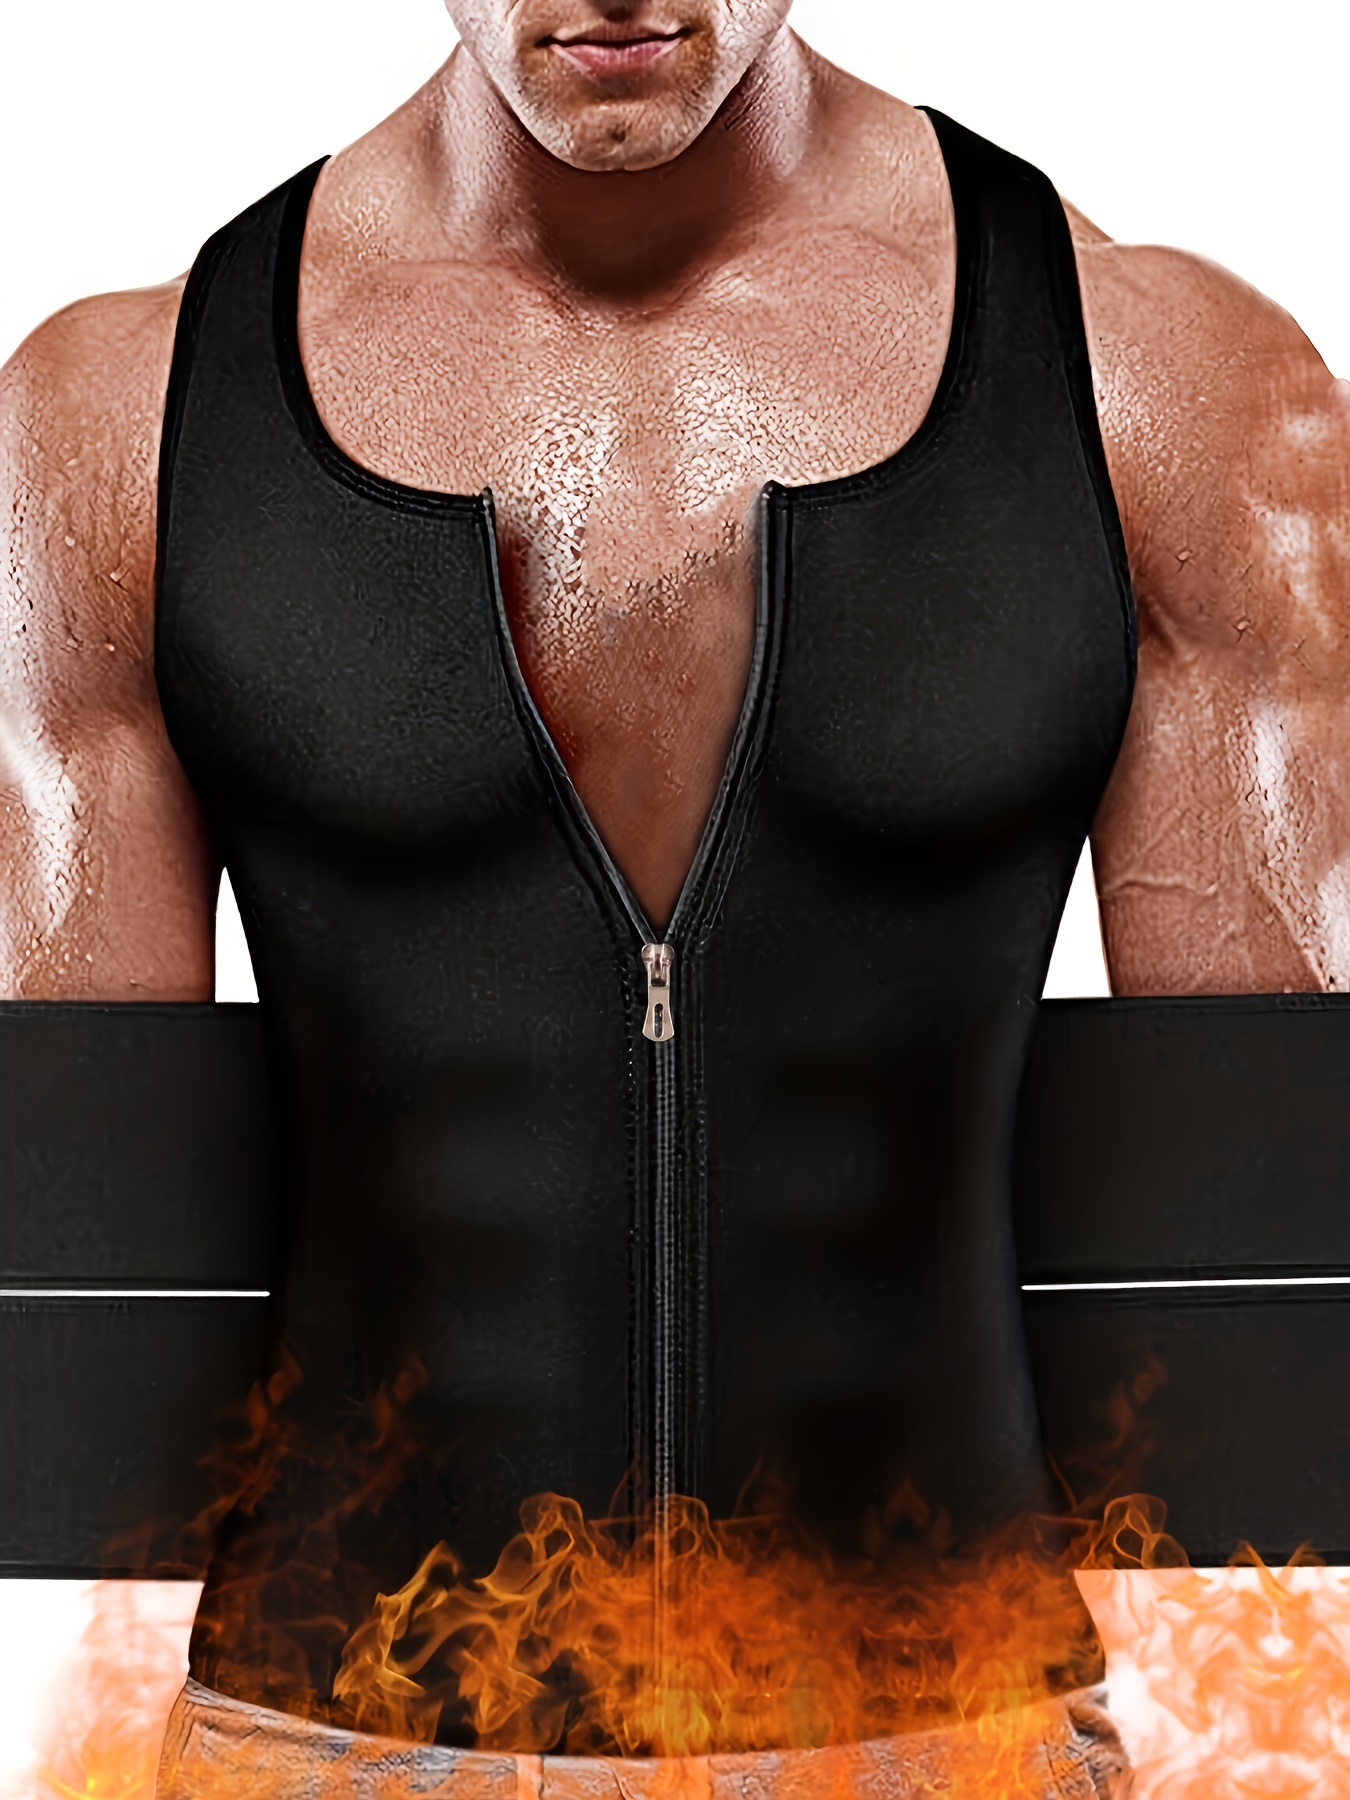 Traje de sauna de neopreno para hombre con cinturón ajustable para recortar  la cintura, ¡Mejora el sudor y quema grasa!